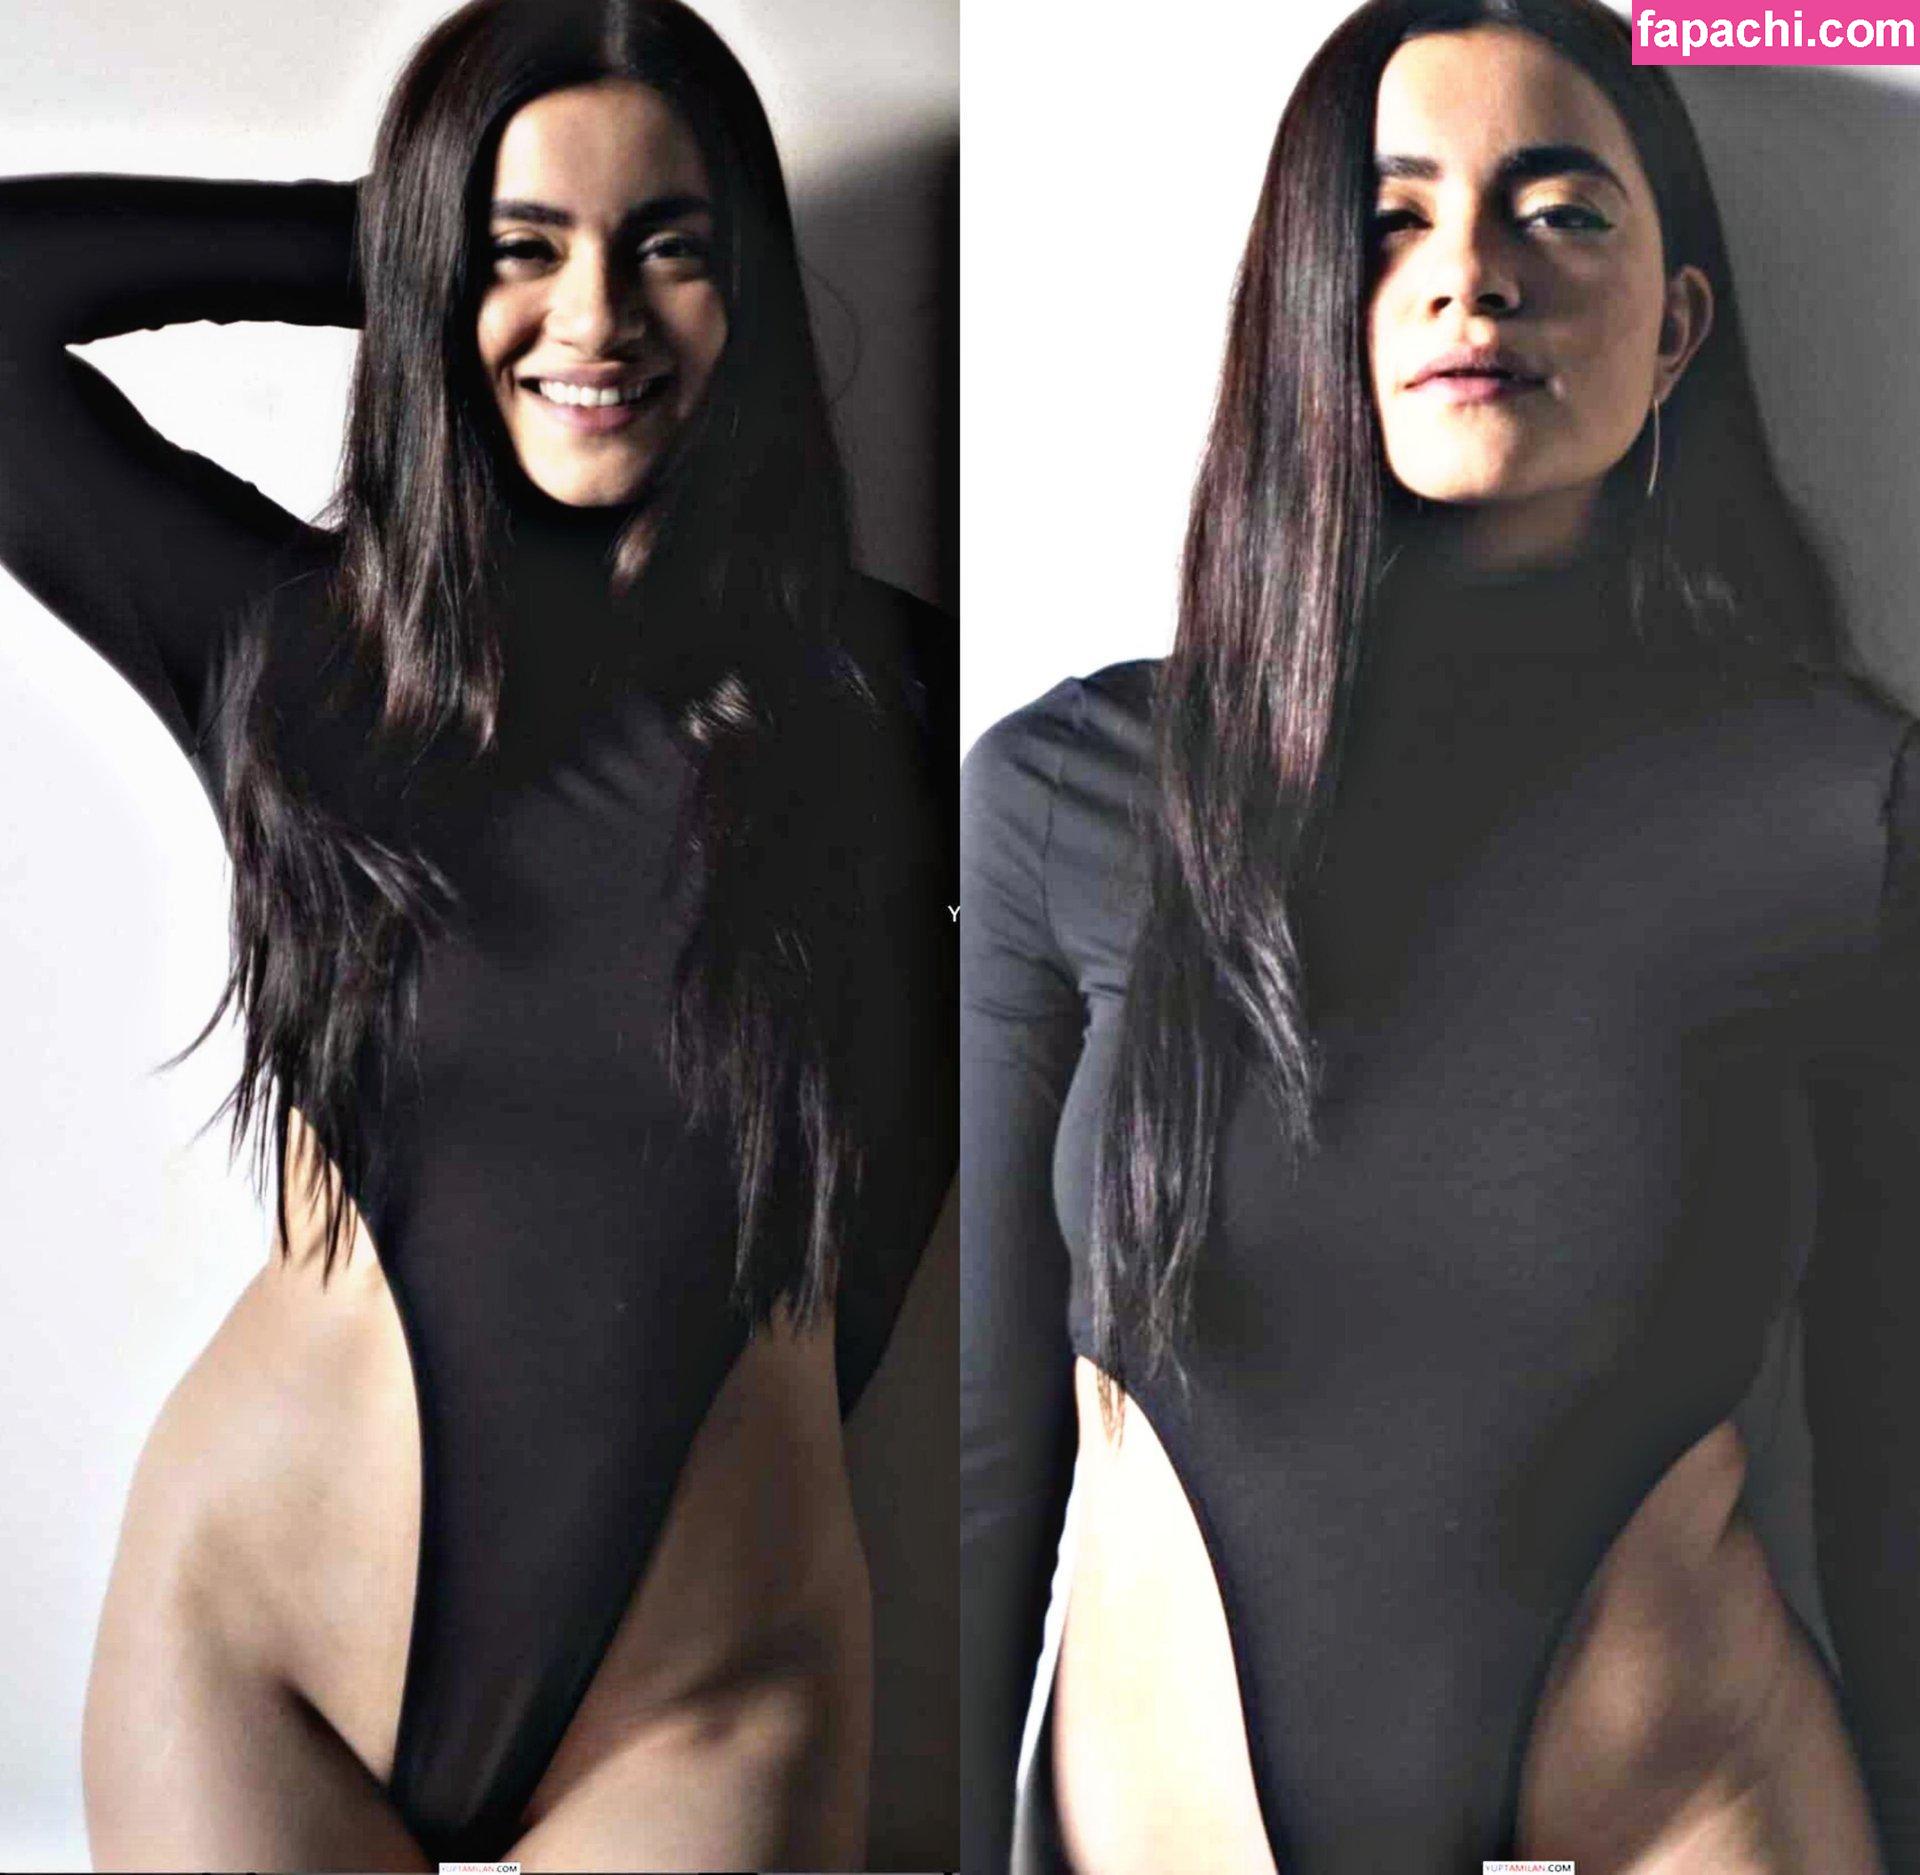 Paulina Gaitan / c_gaitan / paugaitan leaked nude photo #0003 from OnlyFans/Patreon